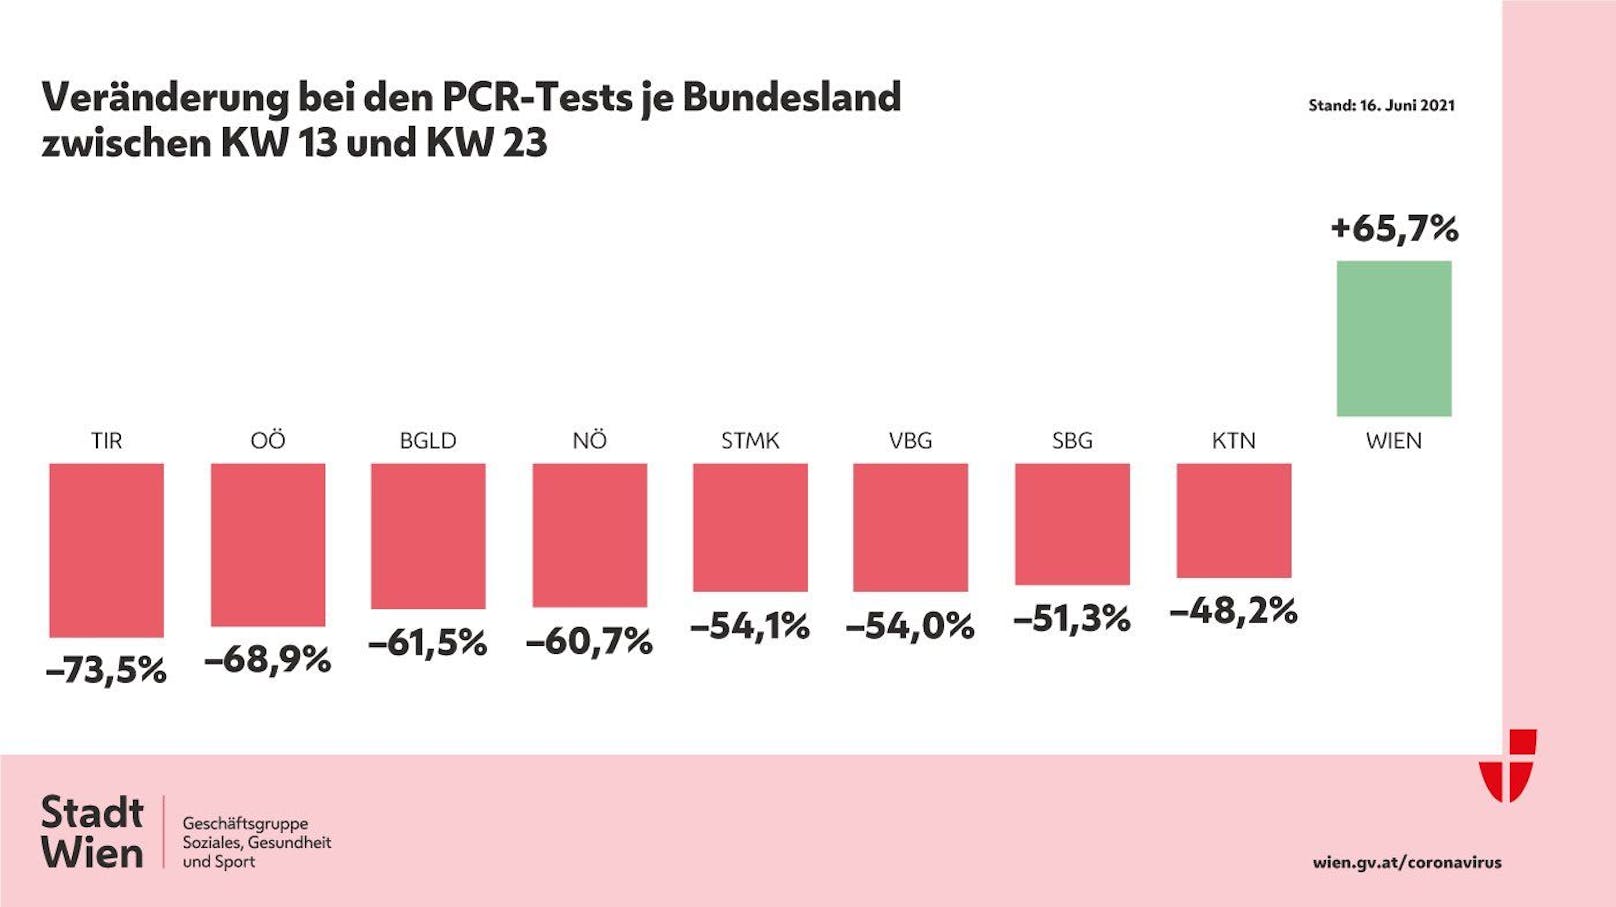 Vergleich der gemachten PCR-Tests nach Bundesland.